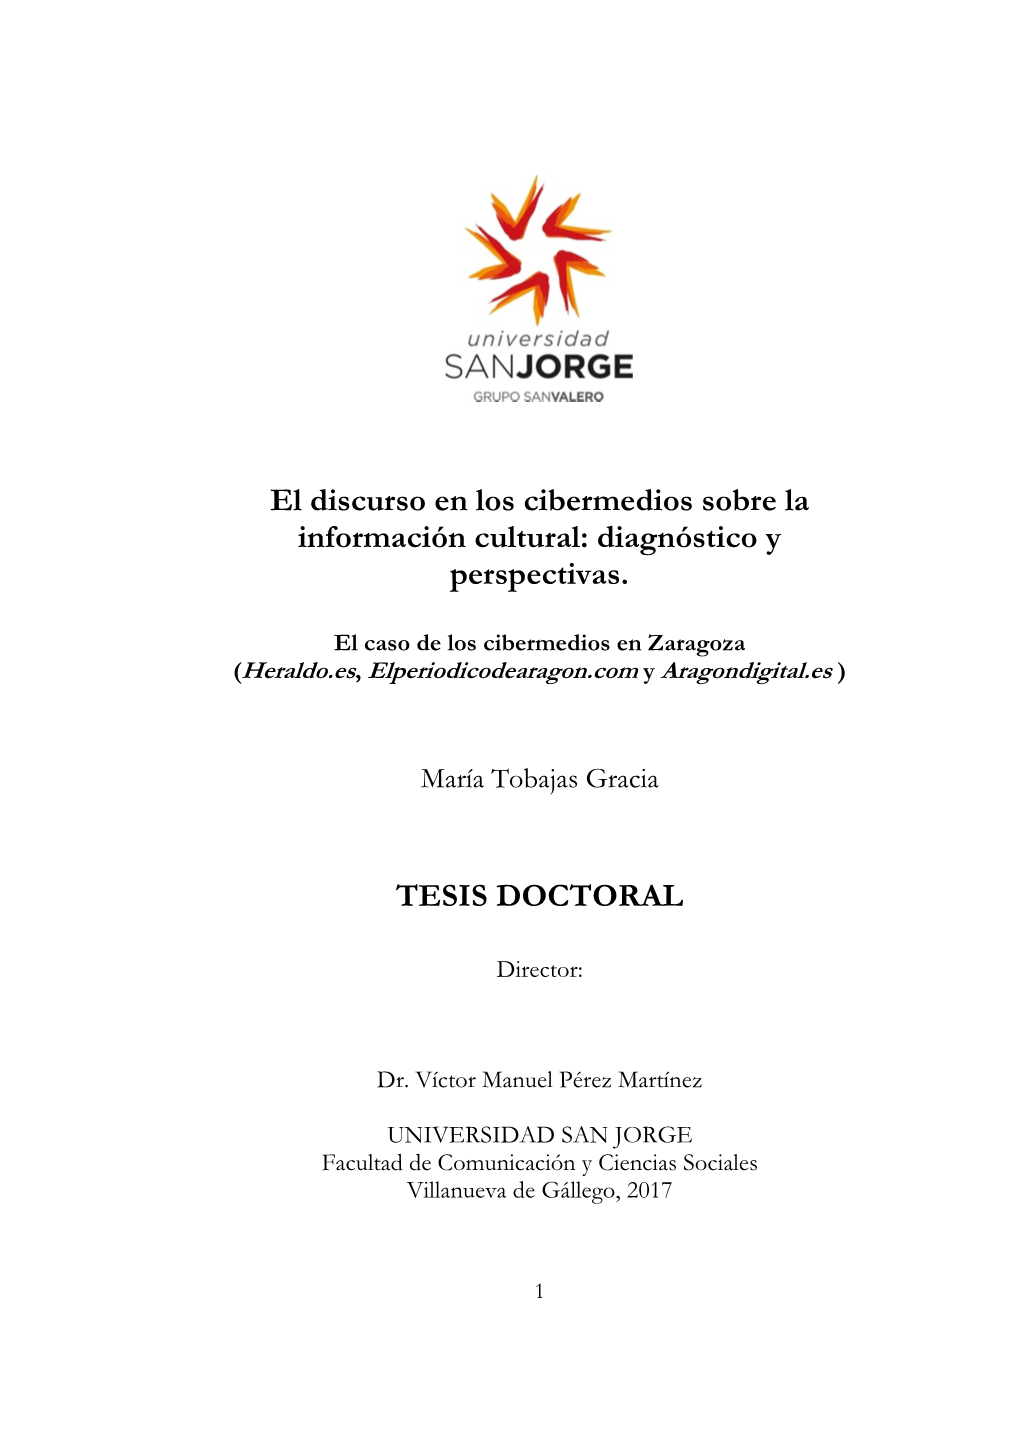 El Discurso En Los Cibermedios Sobre La Información Cultural: Diagnóstico Y Perspectivas